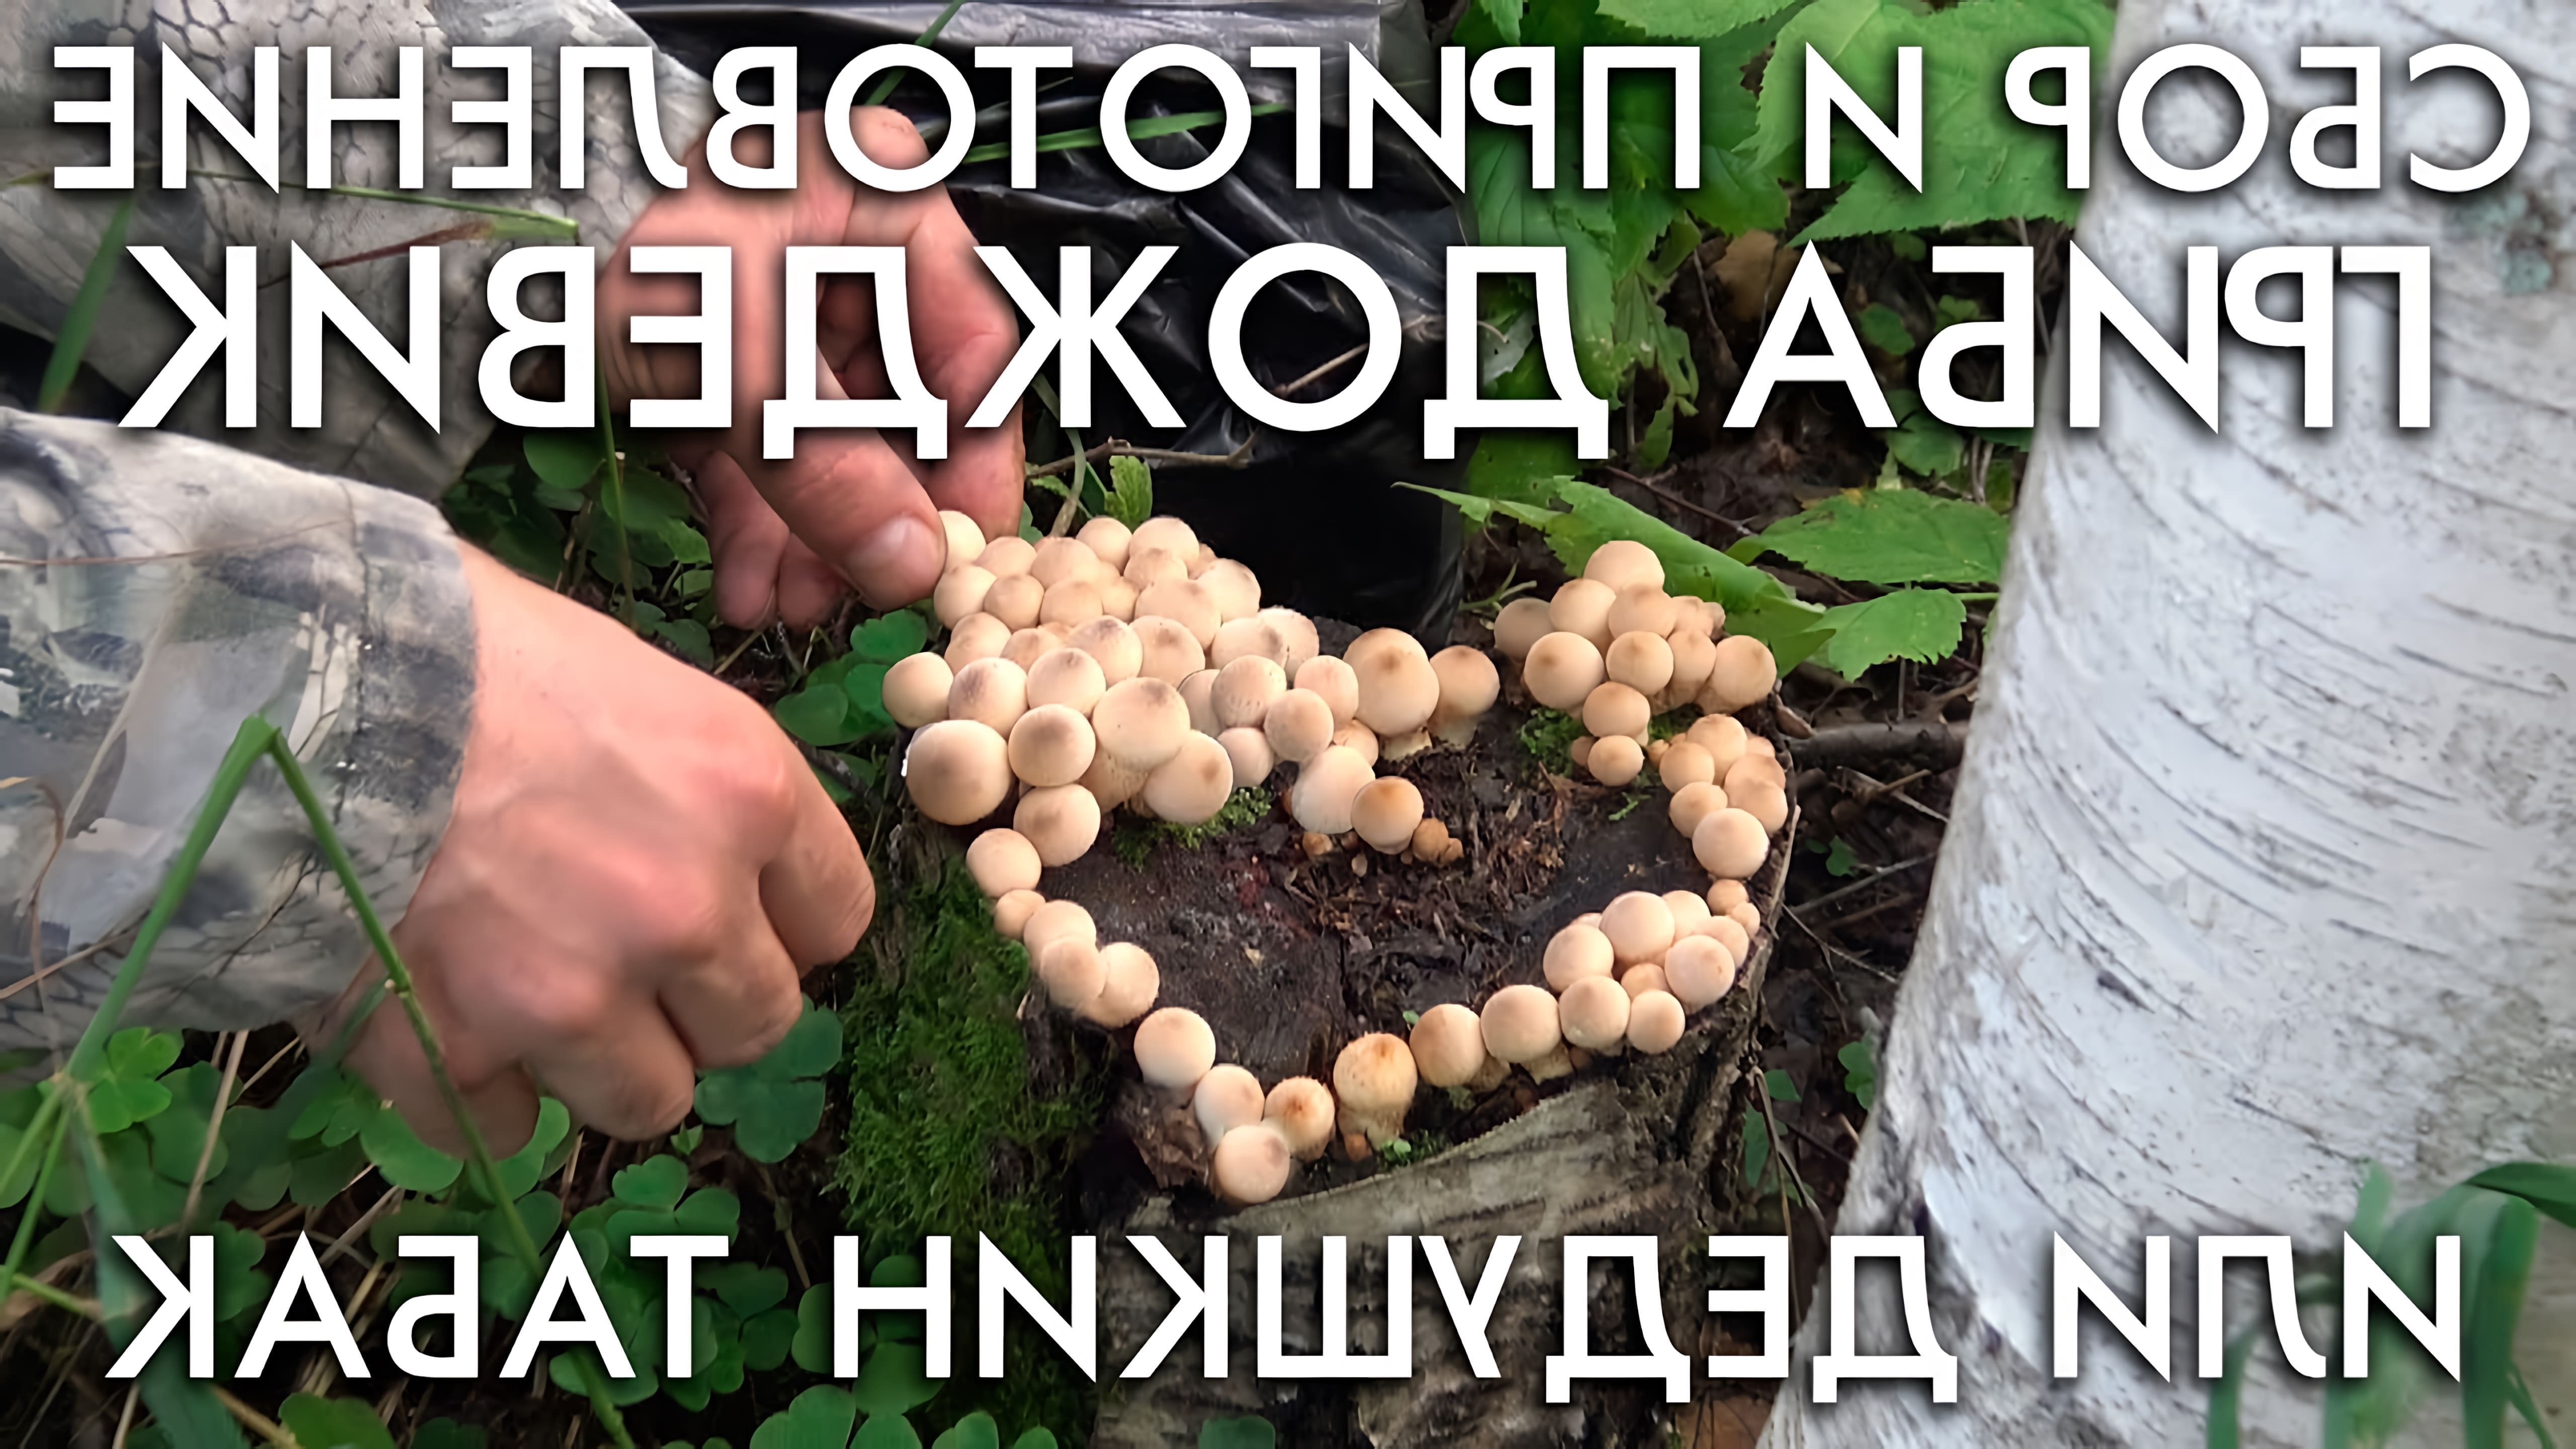 В этом видео демонстрируется процесс сбора и приготовления гриба дождевика, также известного как дедушкин табак